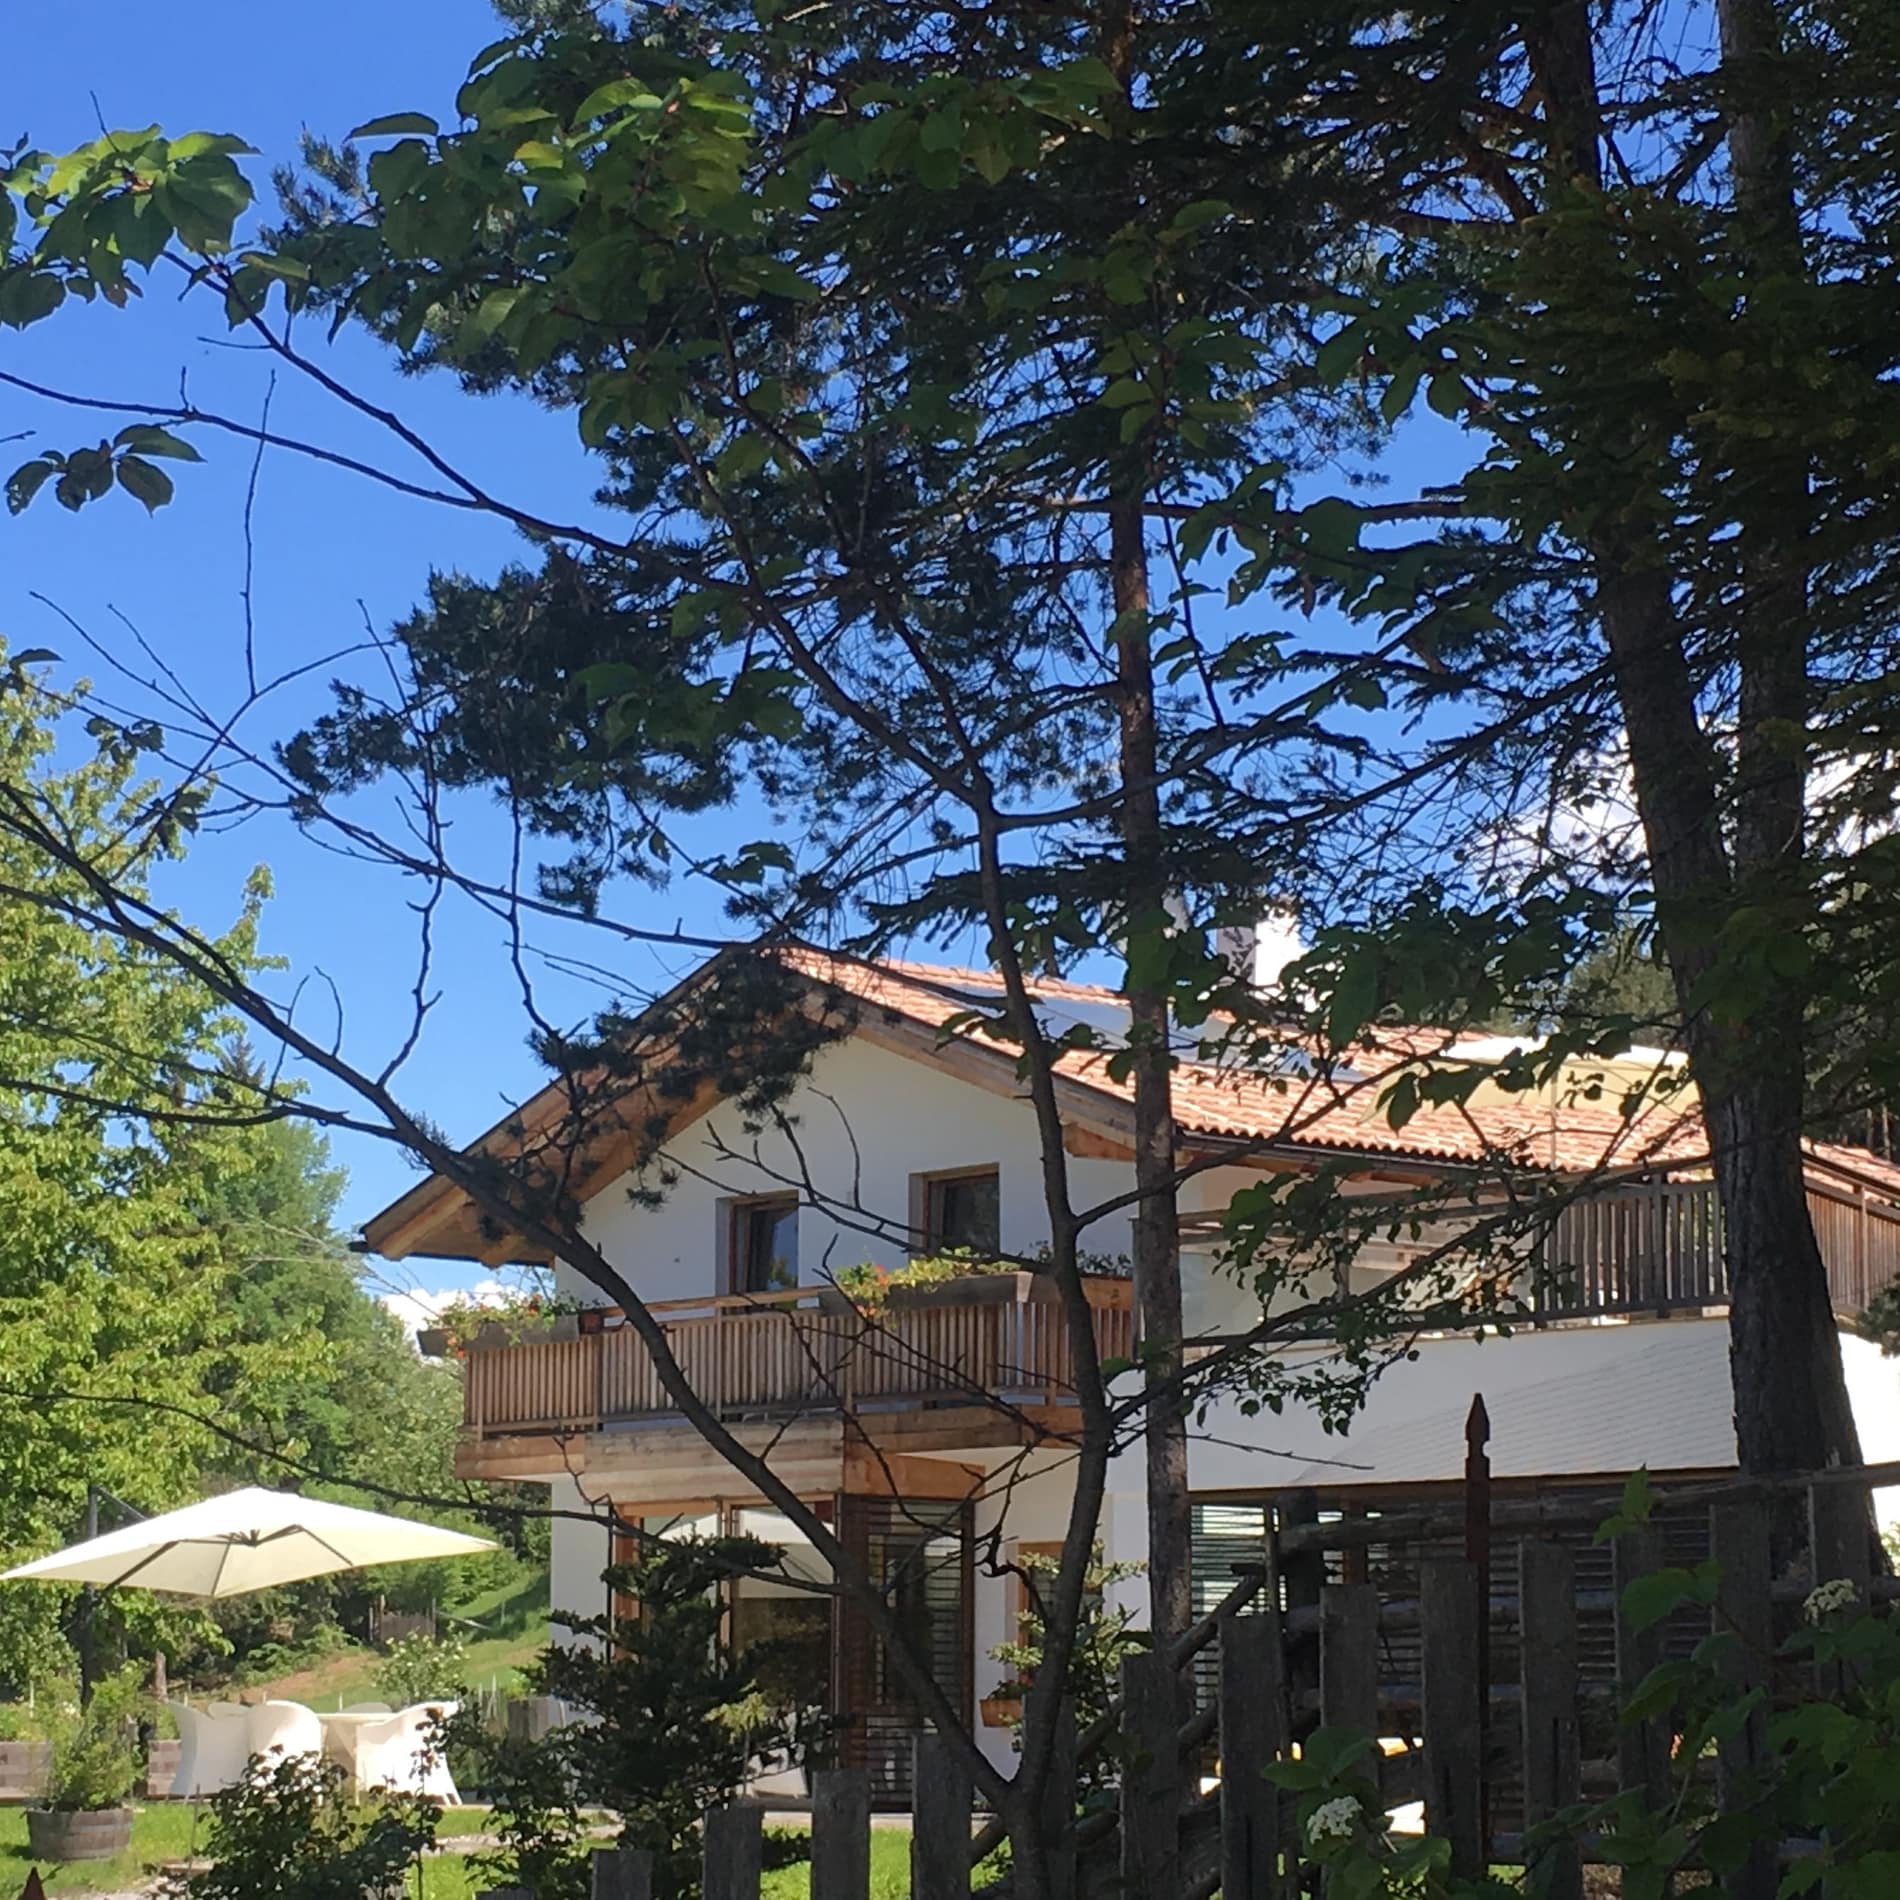 Ferienhaus zwischen Bäumen mit einer Sitzgruppe unter einem Sonnenschirm